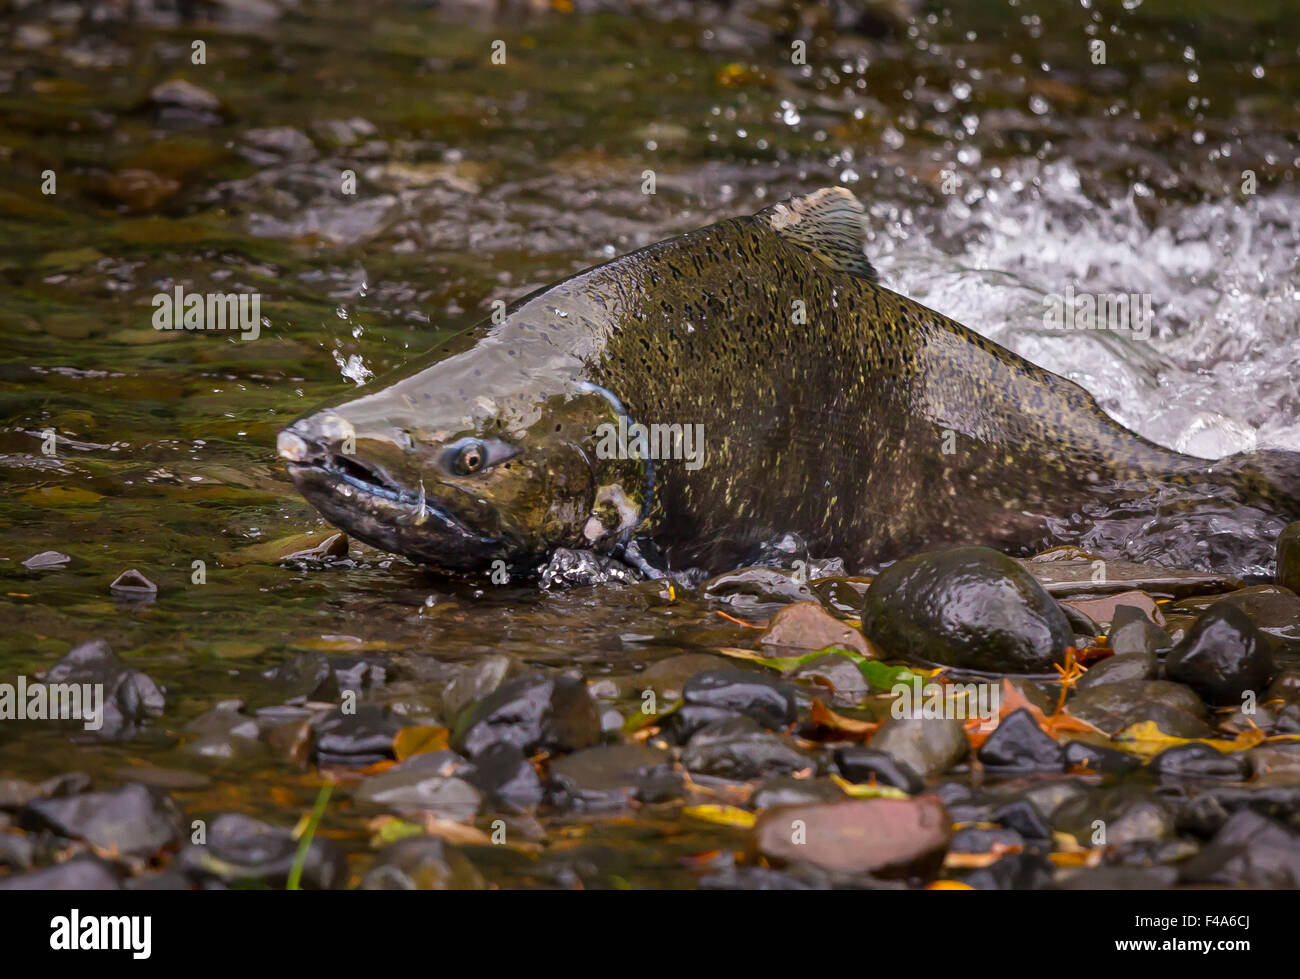 La Columbia River Gorge, OREGON, Stati Uniti d'America - Salmone eseguito su Eagle Creek. Il pesce nuota fino la sua natal fiume per deporre le uova. Foto Stock